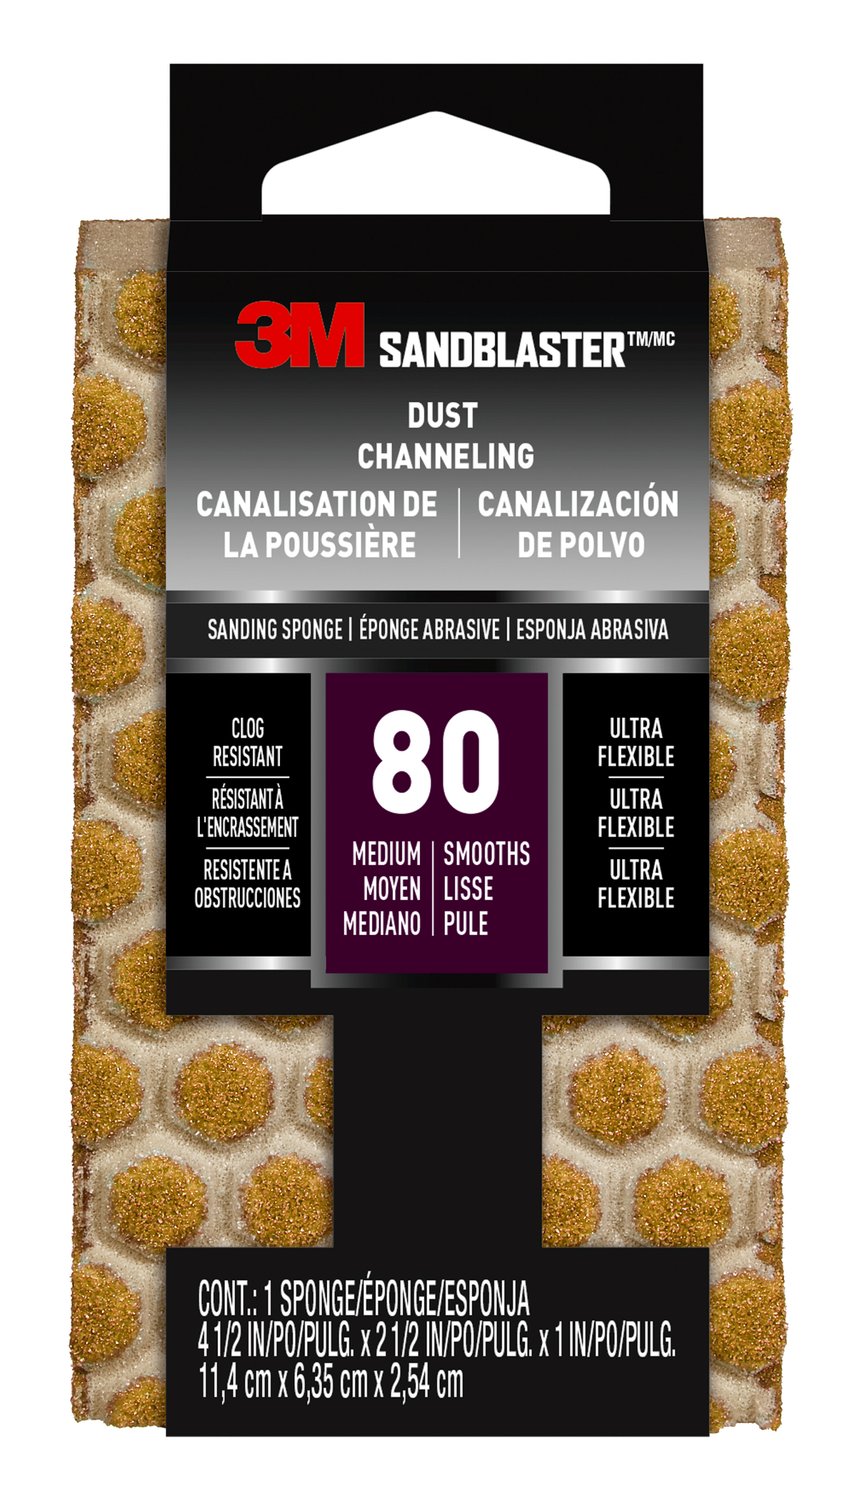 7100183337 - 3M SandBlaster DUST CHANNELING Sanding Sponge, 20908-80-UFS ,80 grit,
4 1/2 in x 2 1/2 x 1 in, 10/case